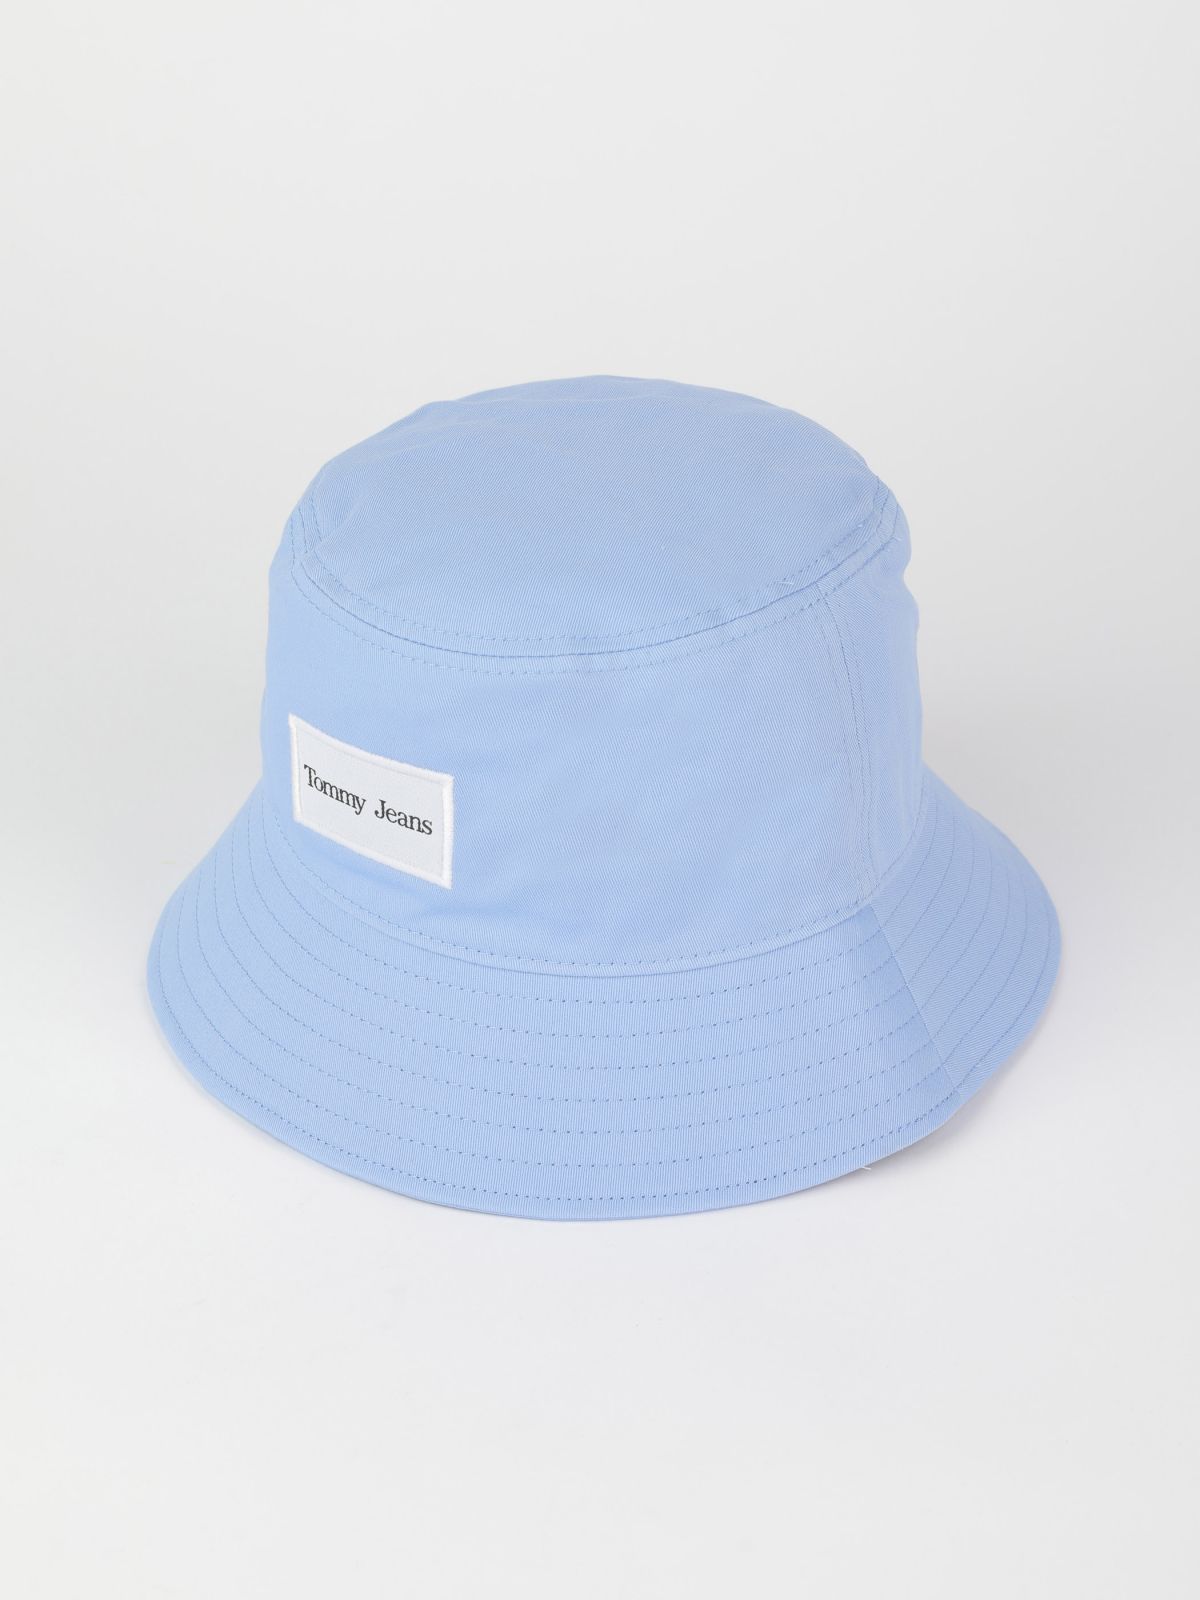  כובע באקט לוגו / נשים של TOMMY HILFIGER